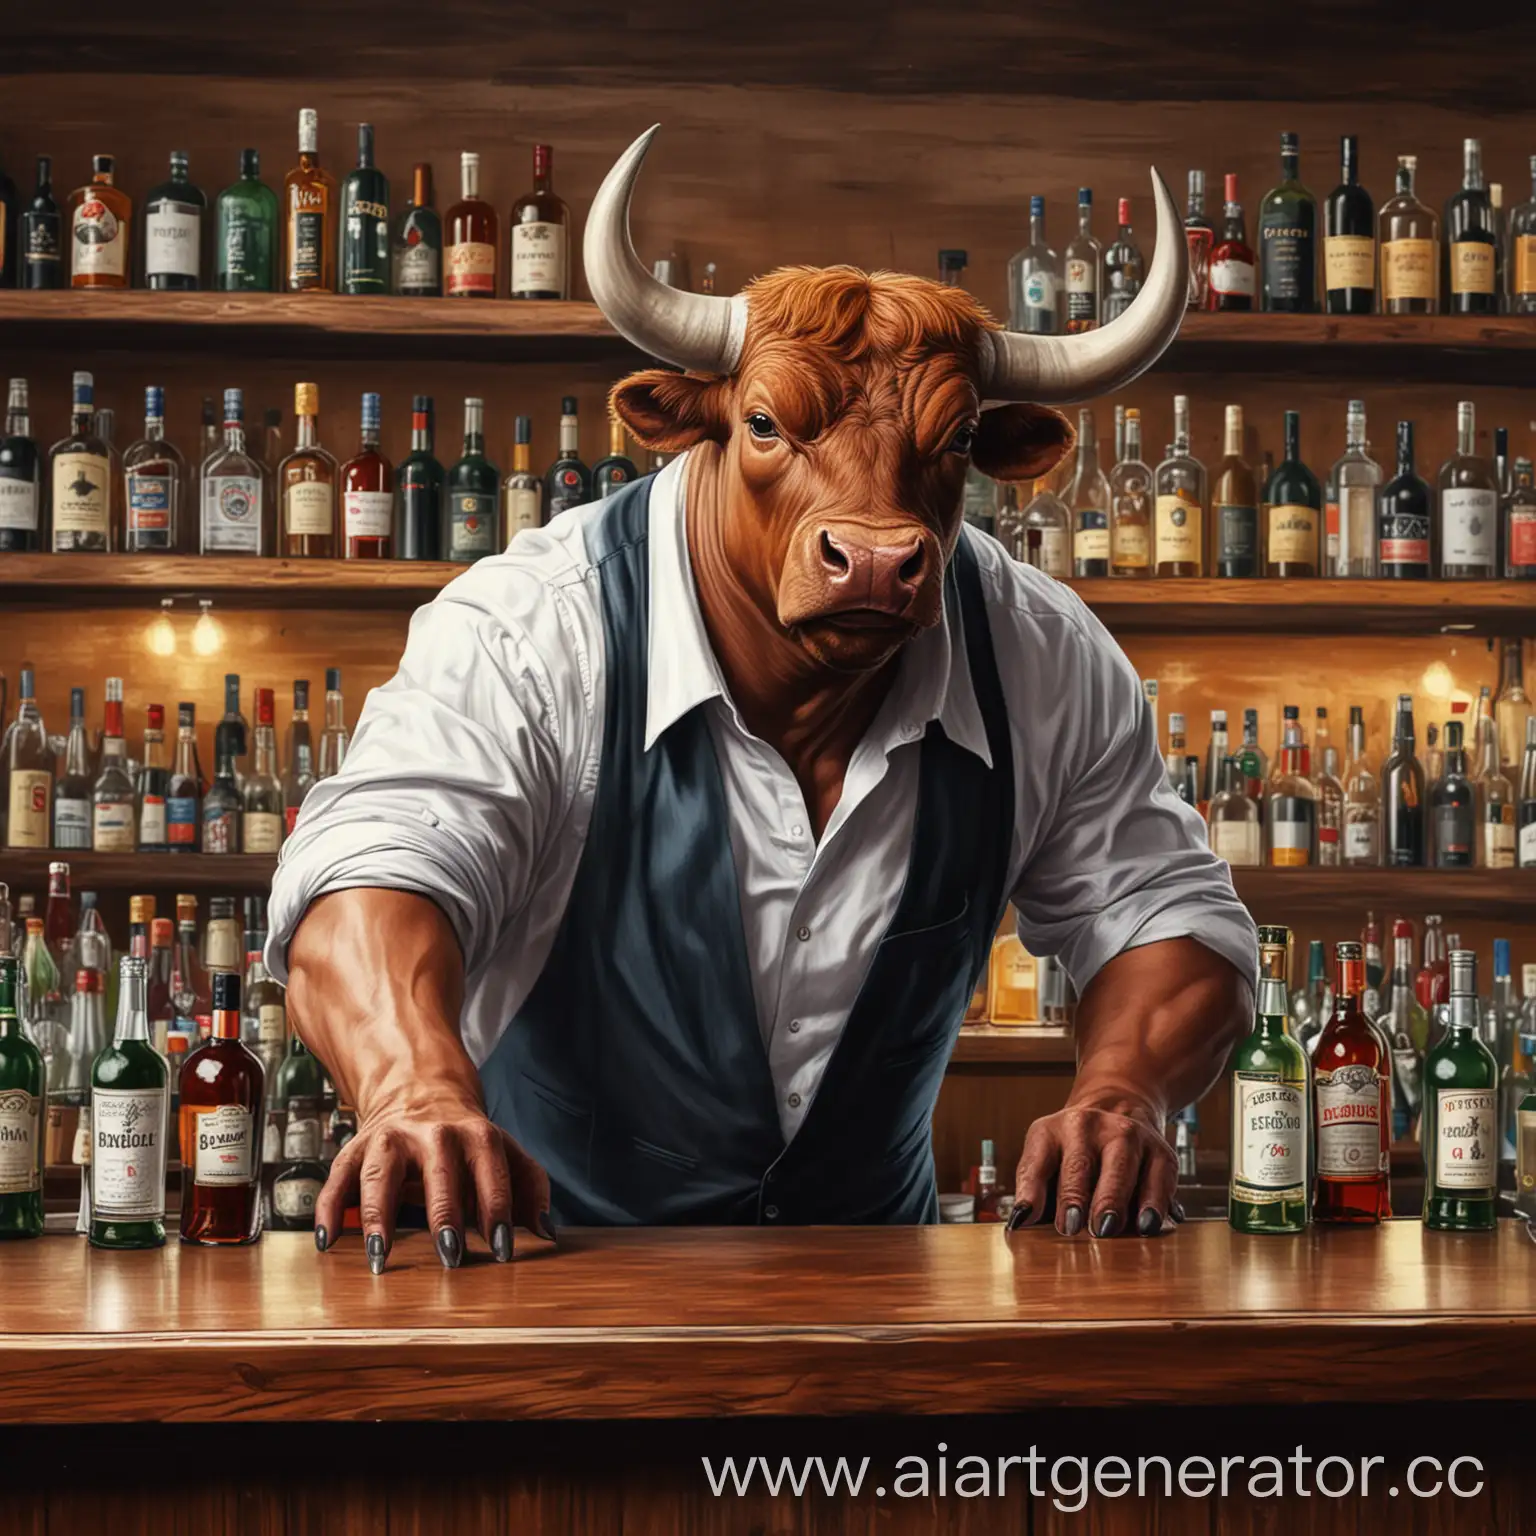 нарисуй быка бармена за барной стойкой , он должен положить руки на барную стойку на барной стойке стоят бутылки с алкоголем , 